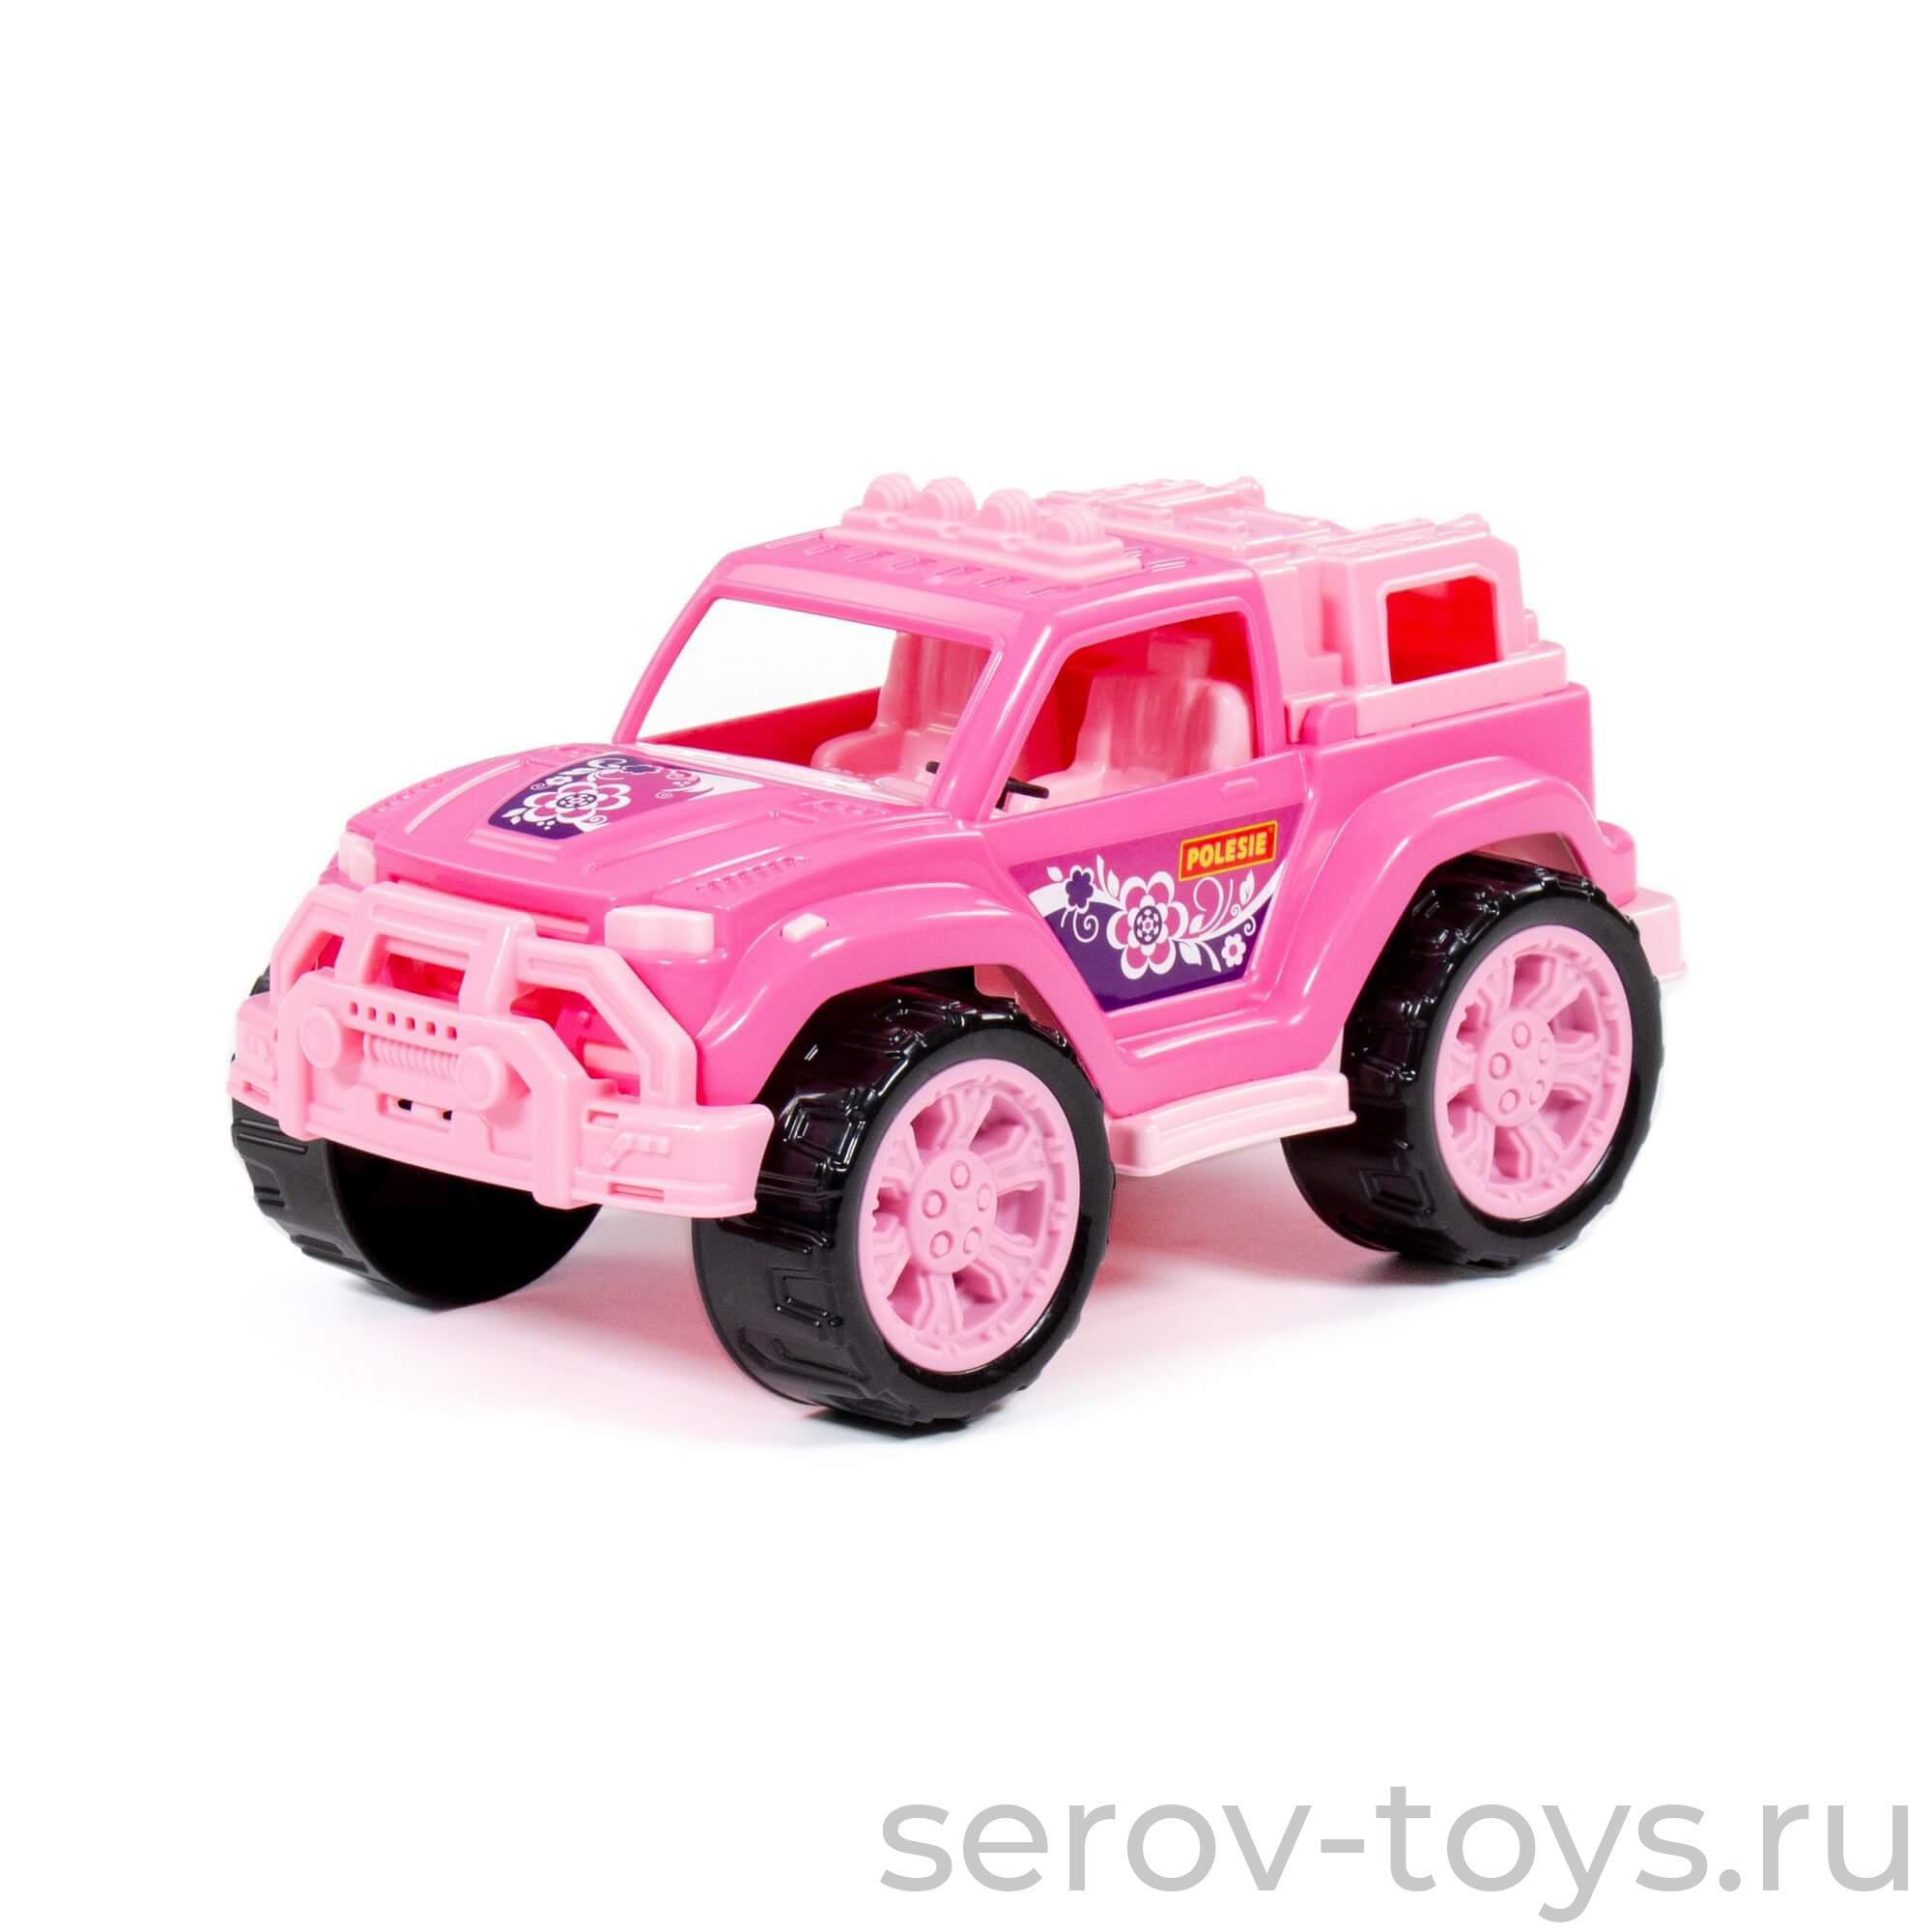 Автомобиль Легионер 87584 Розовый в сетке